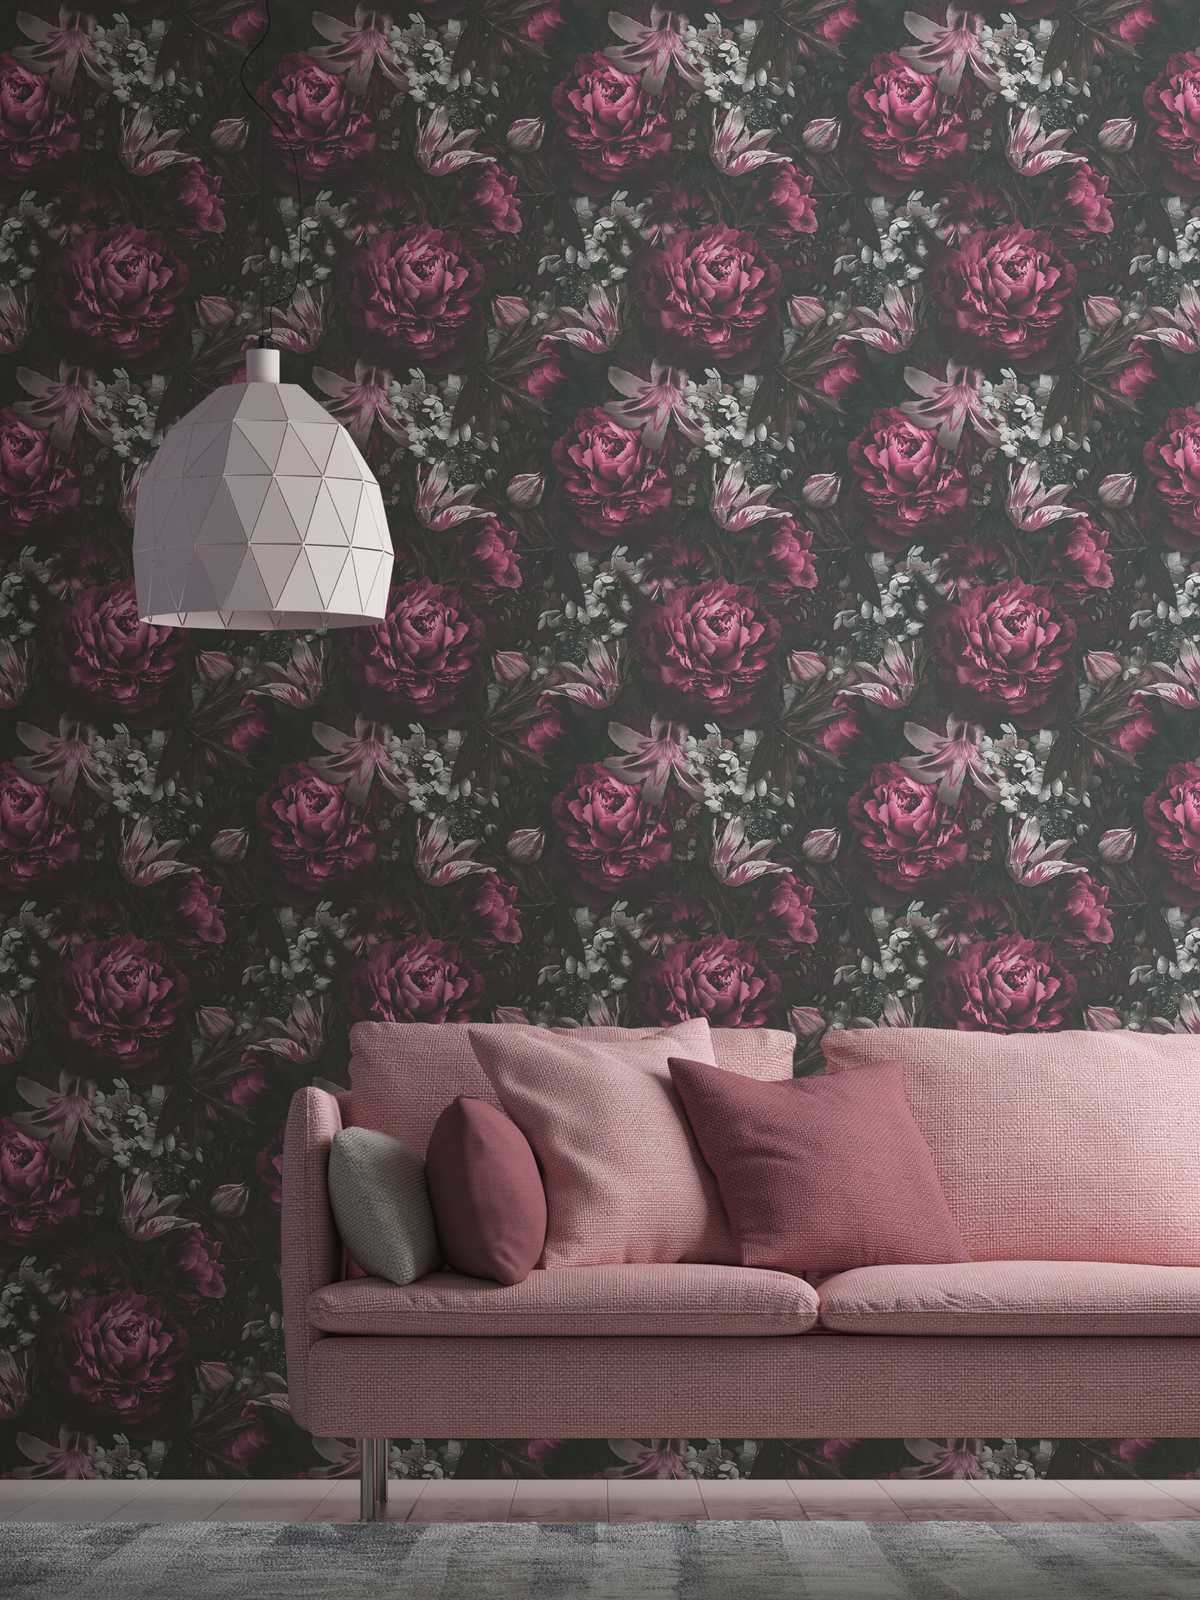             Papier peint Roses & tulipes de style classique - rose, gris
        